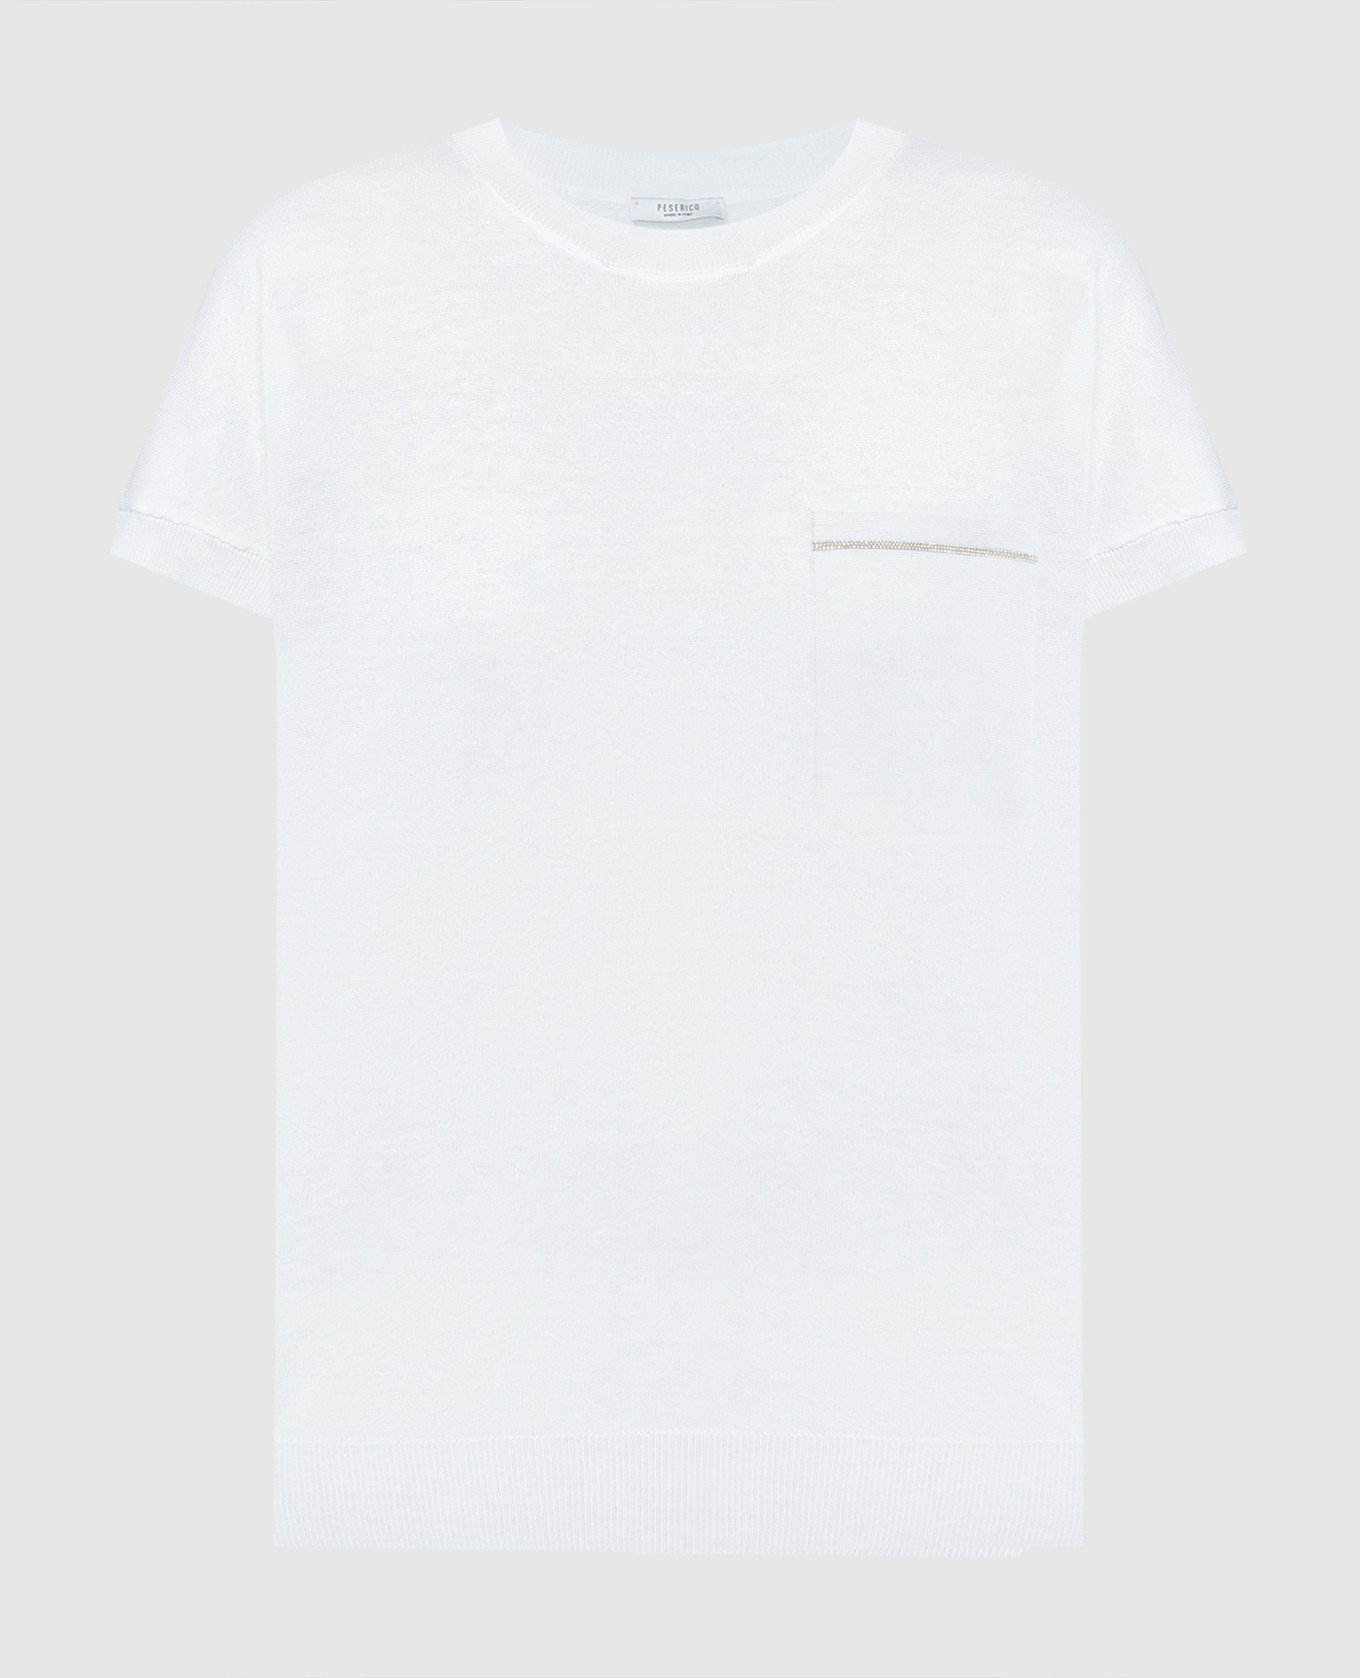 White t-shirt with monil chain